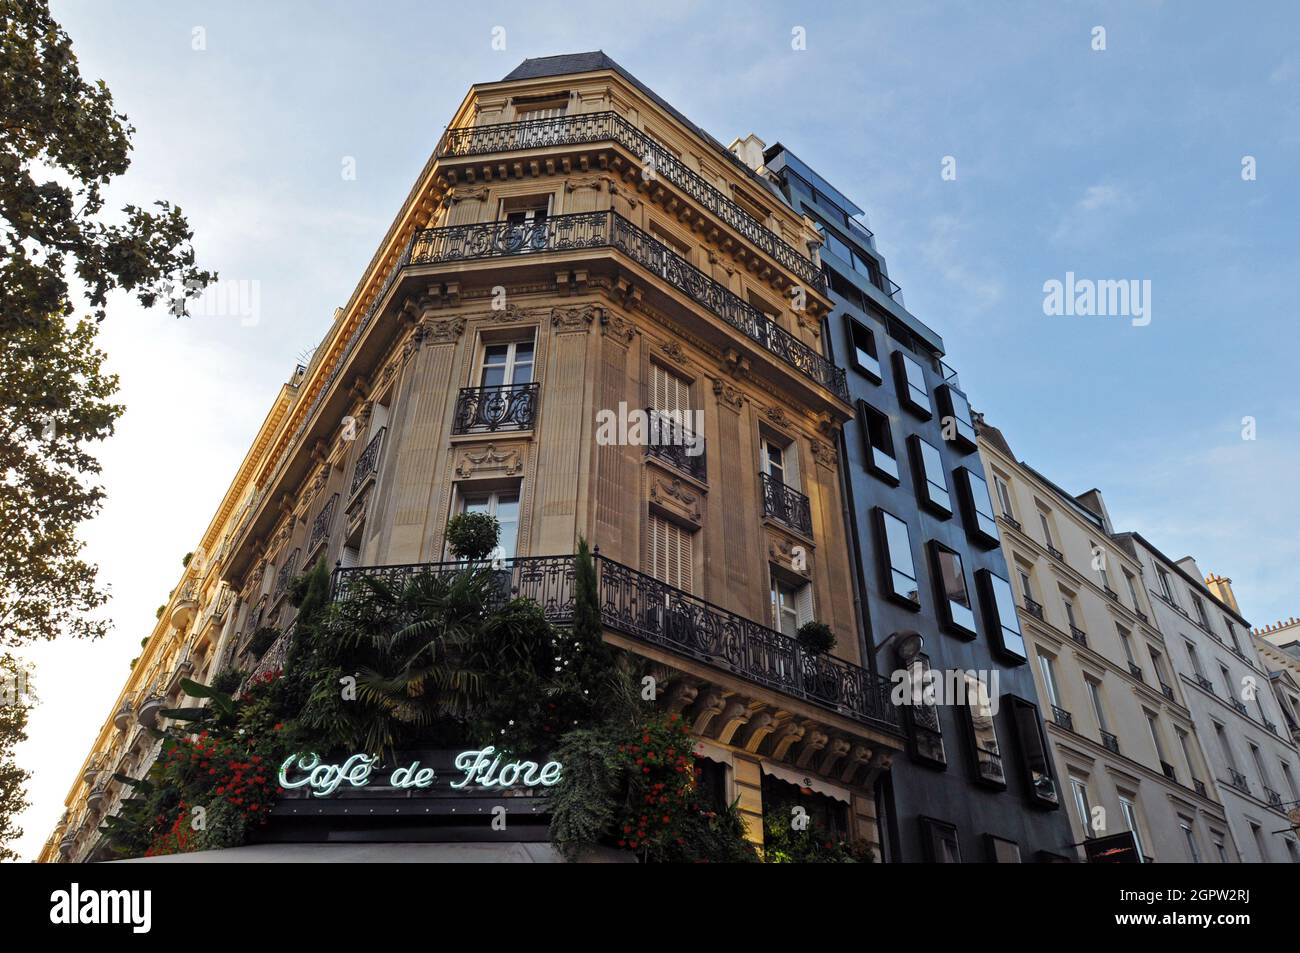 The corner building housing Café de Flore, a famous coffeehouse popular with tourists in the Saint-Germain-des-Prés area of Paris. Stock Photo